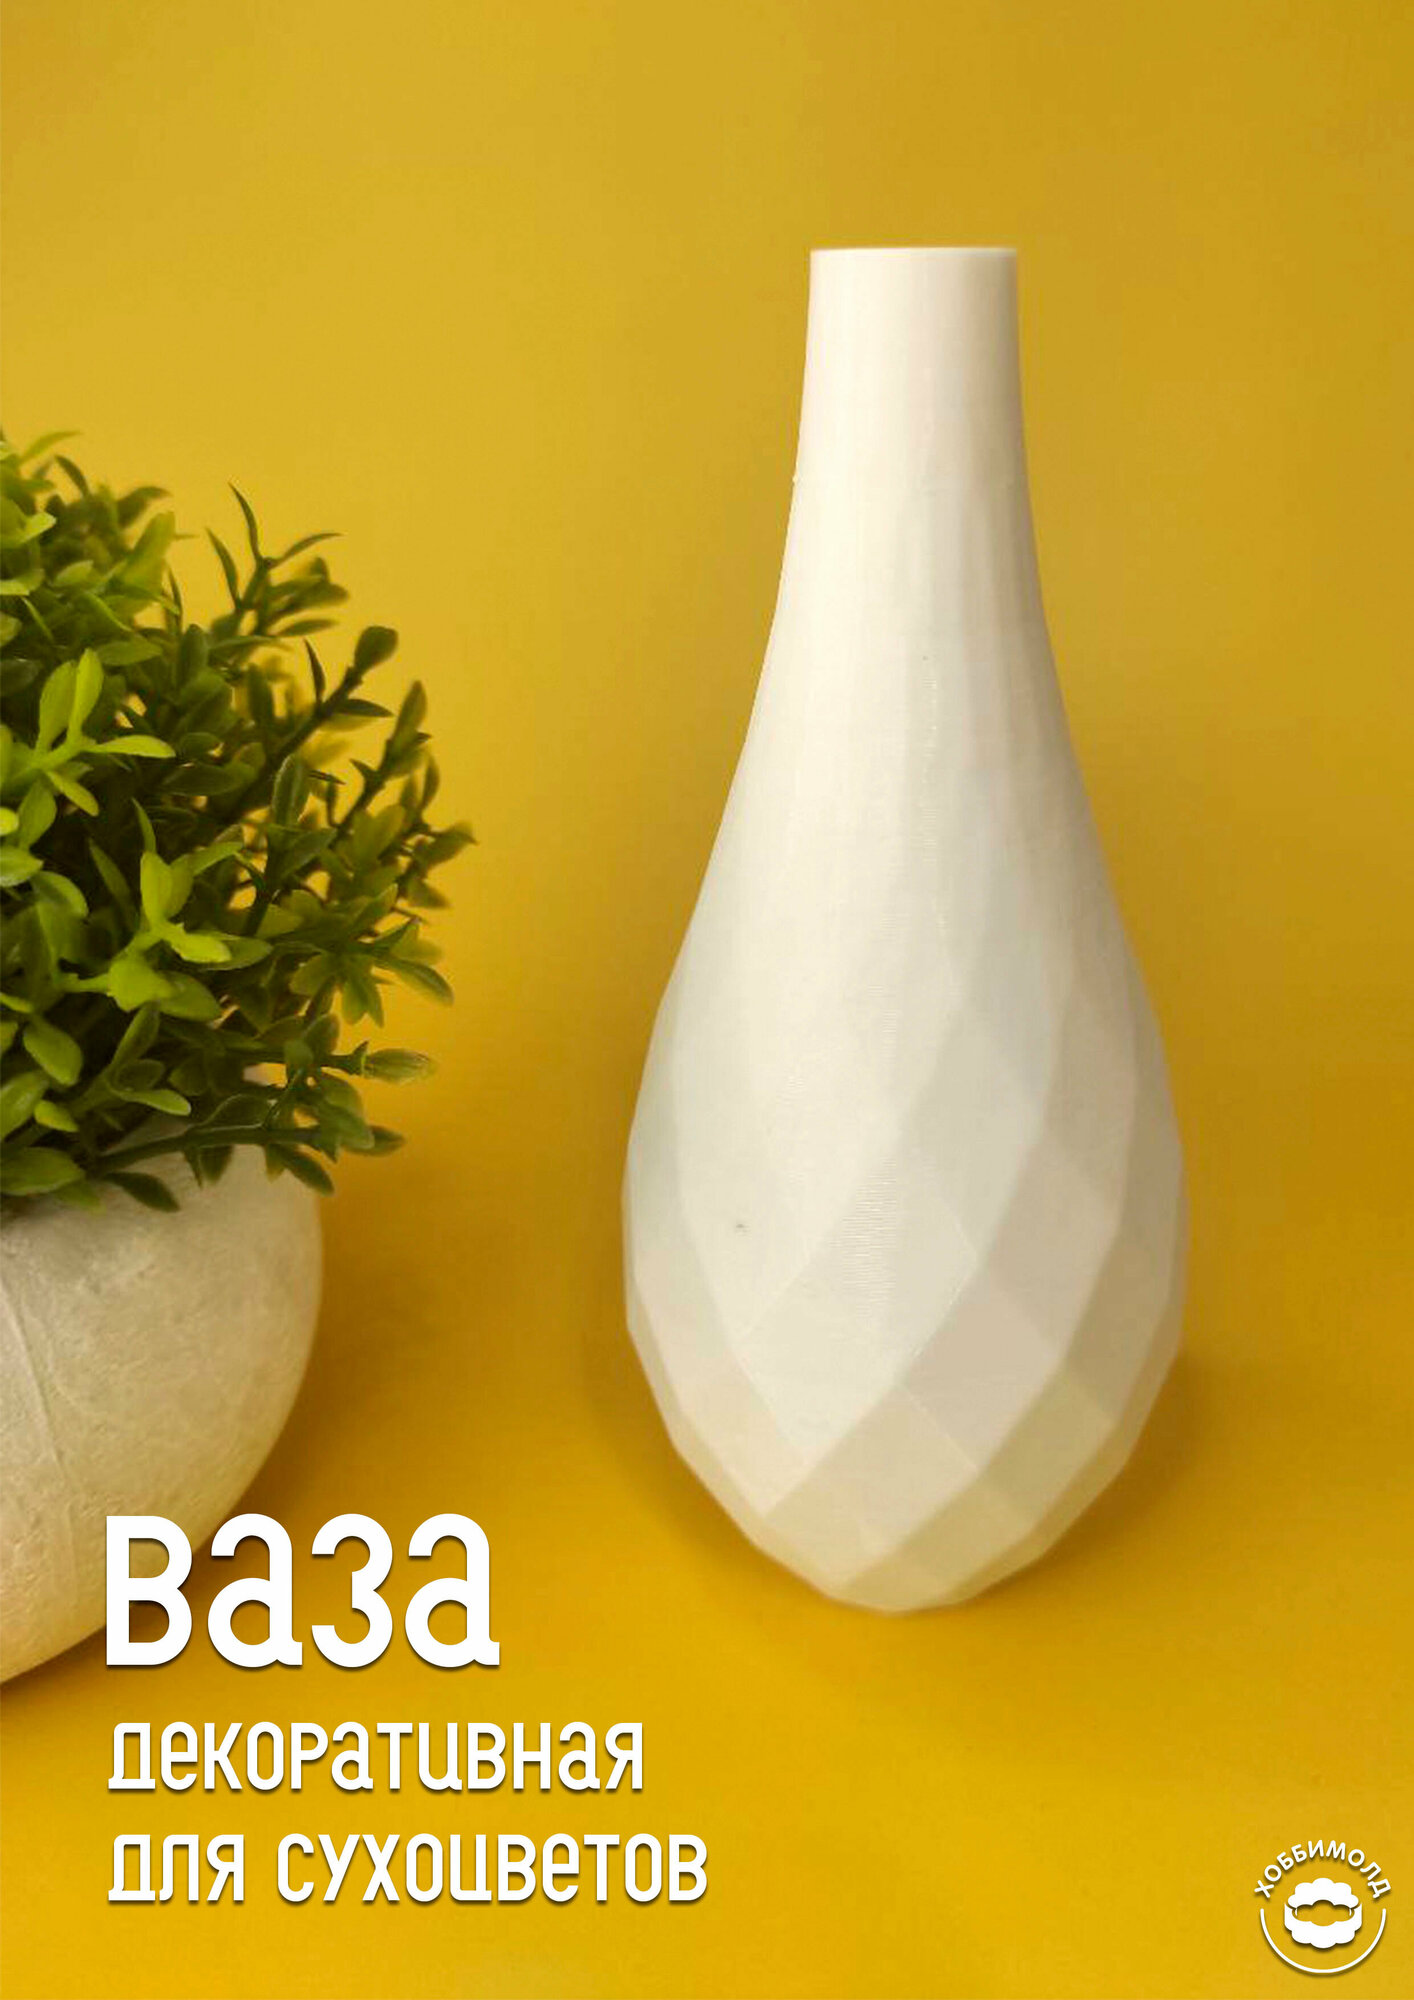 Декоративная 3д печатная ваза интерьерная для сухоцветов Капля белая